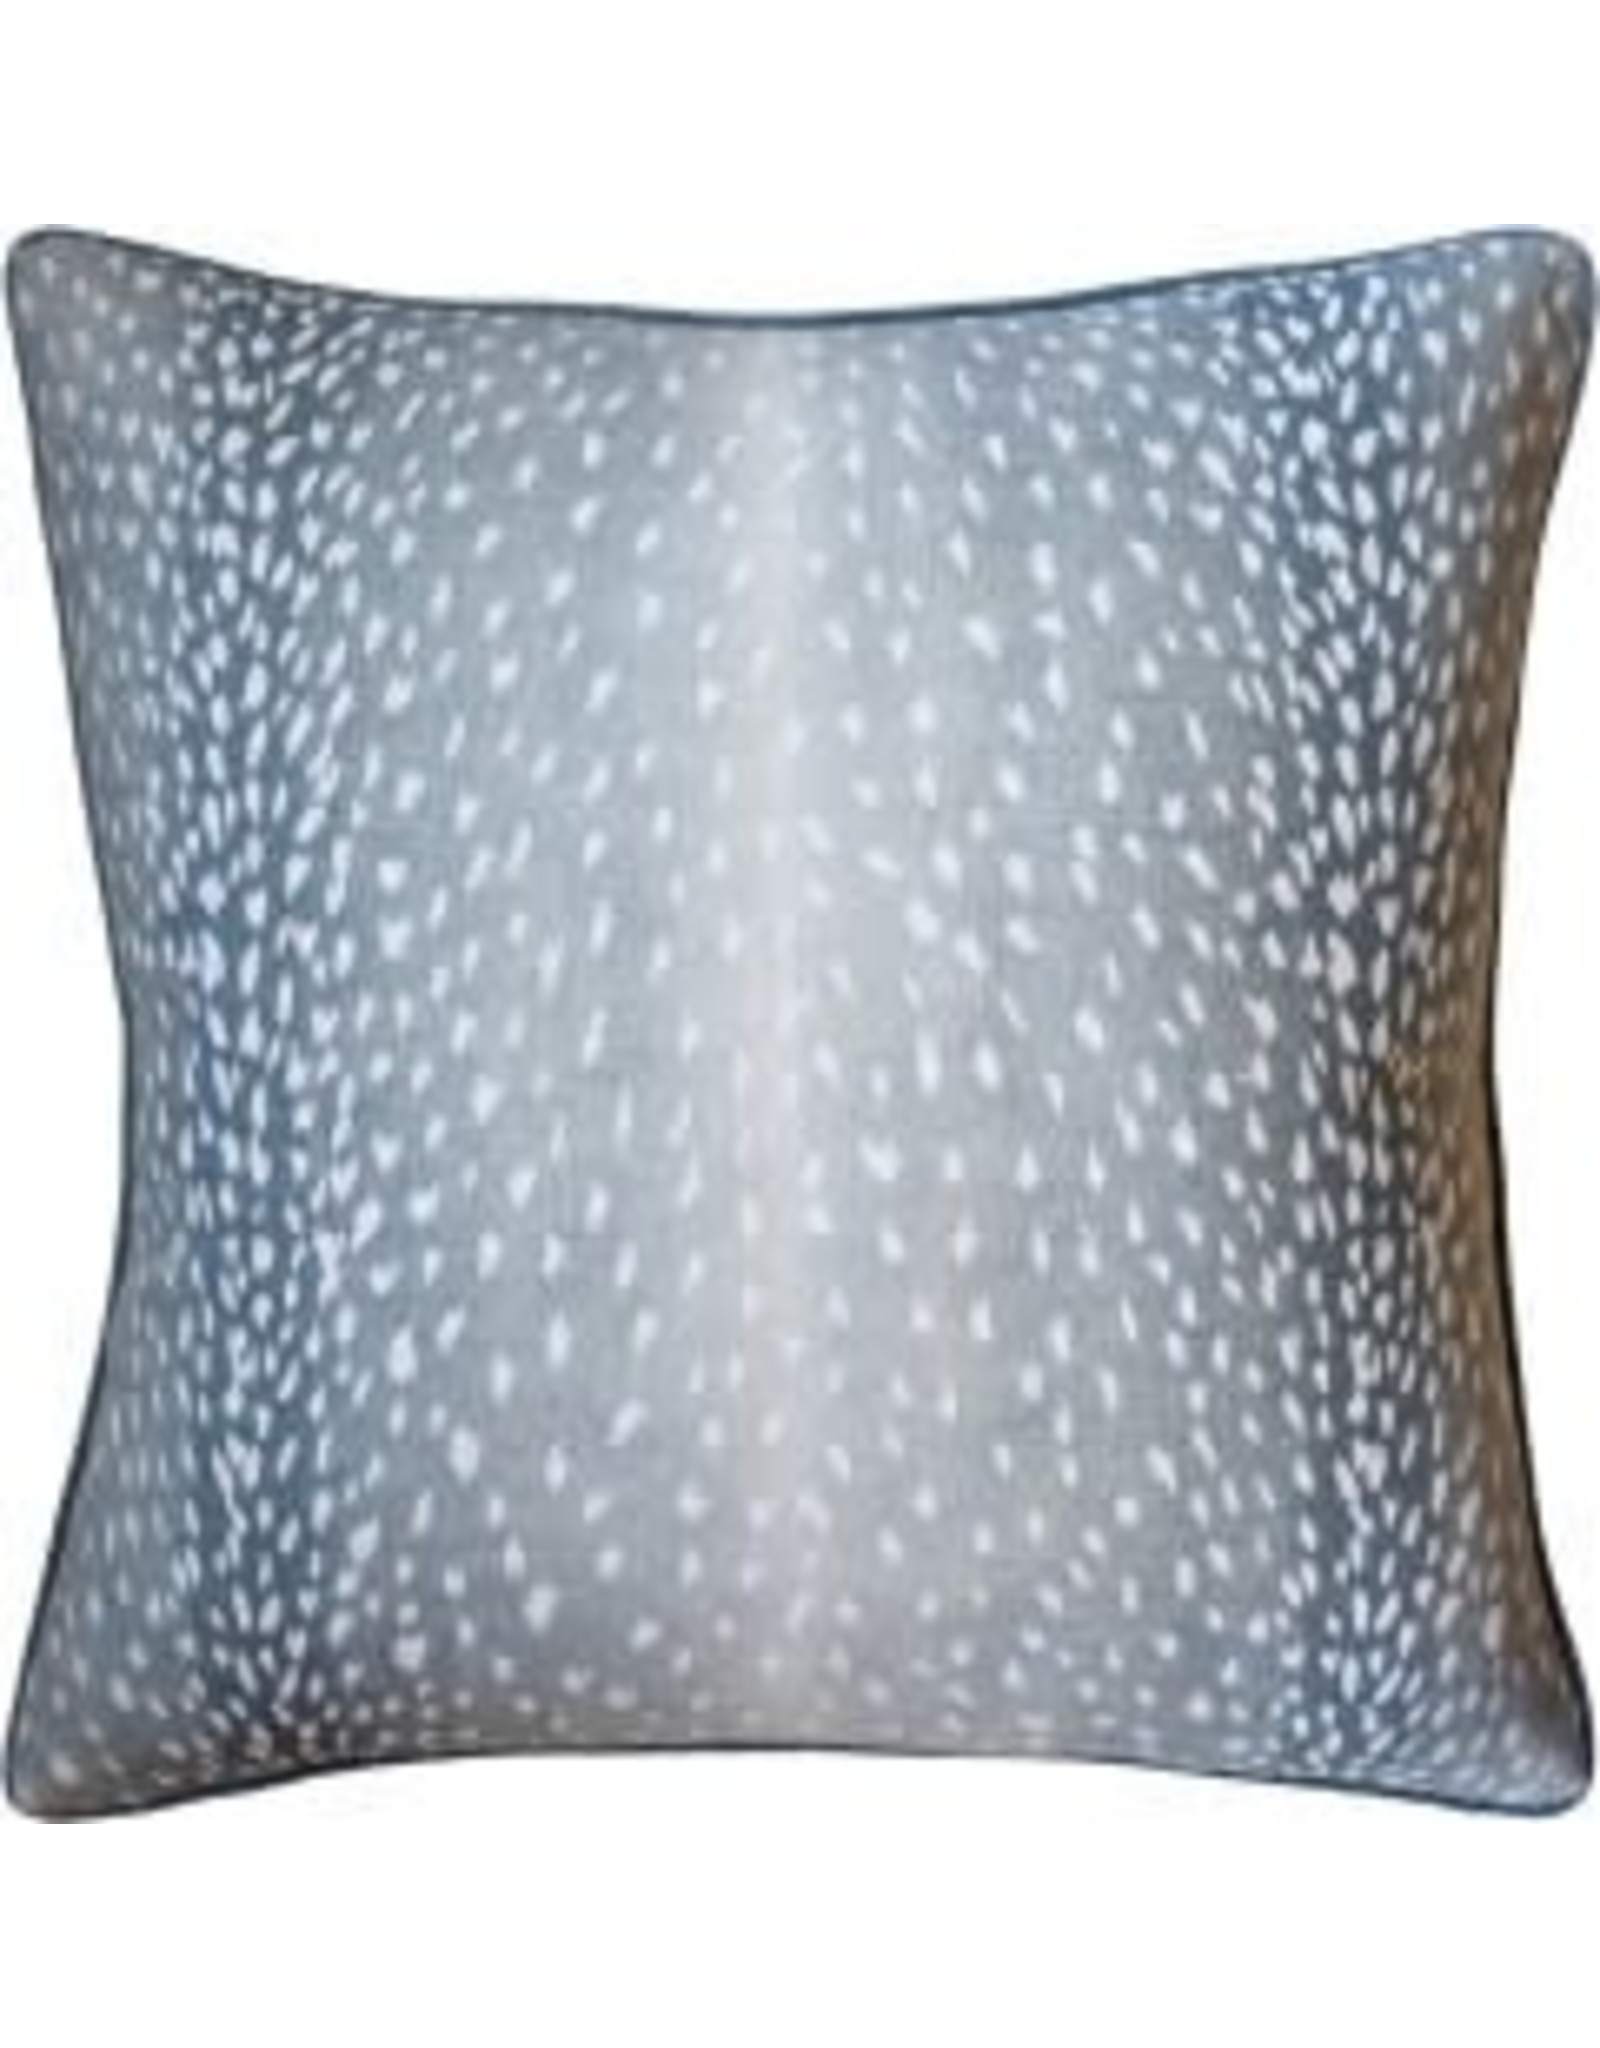 Website Doe Aqua Pillow 22"